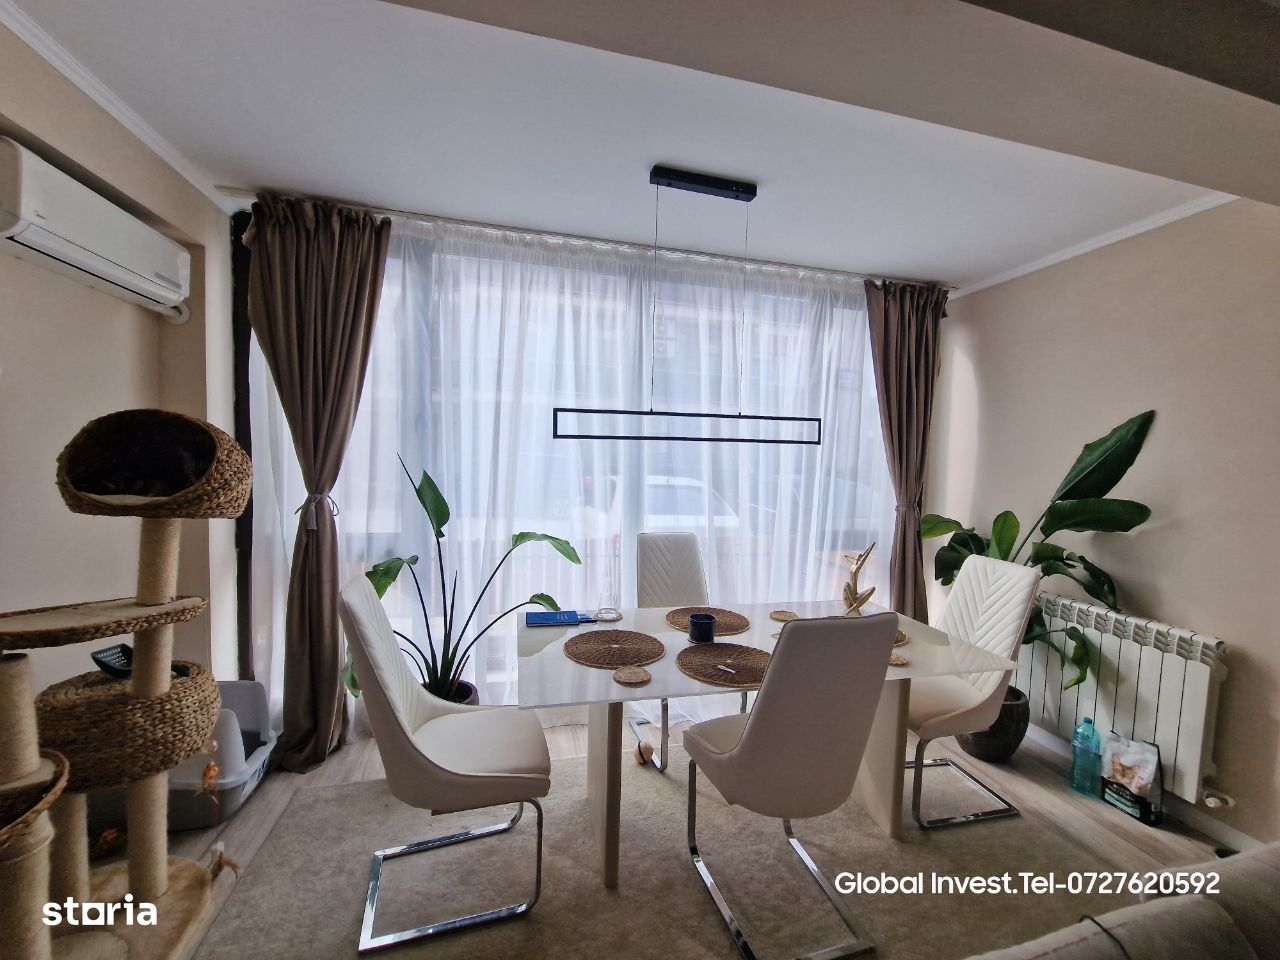 Mamaia Nord - Apartament 3 Camere decomandate 92mp, confort maxim